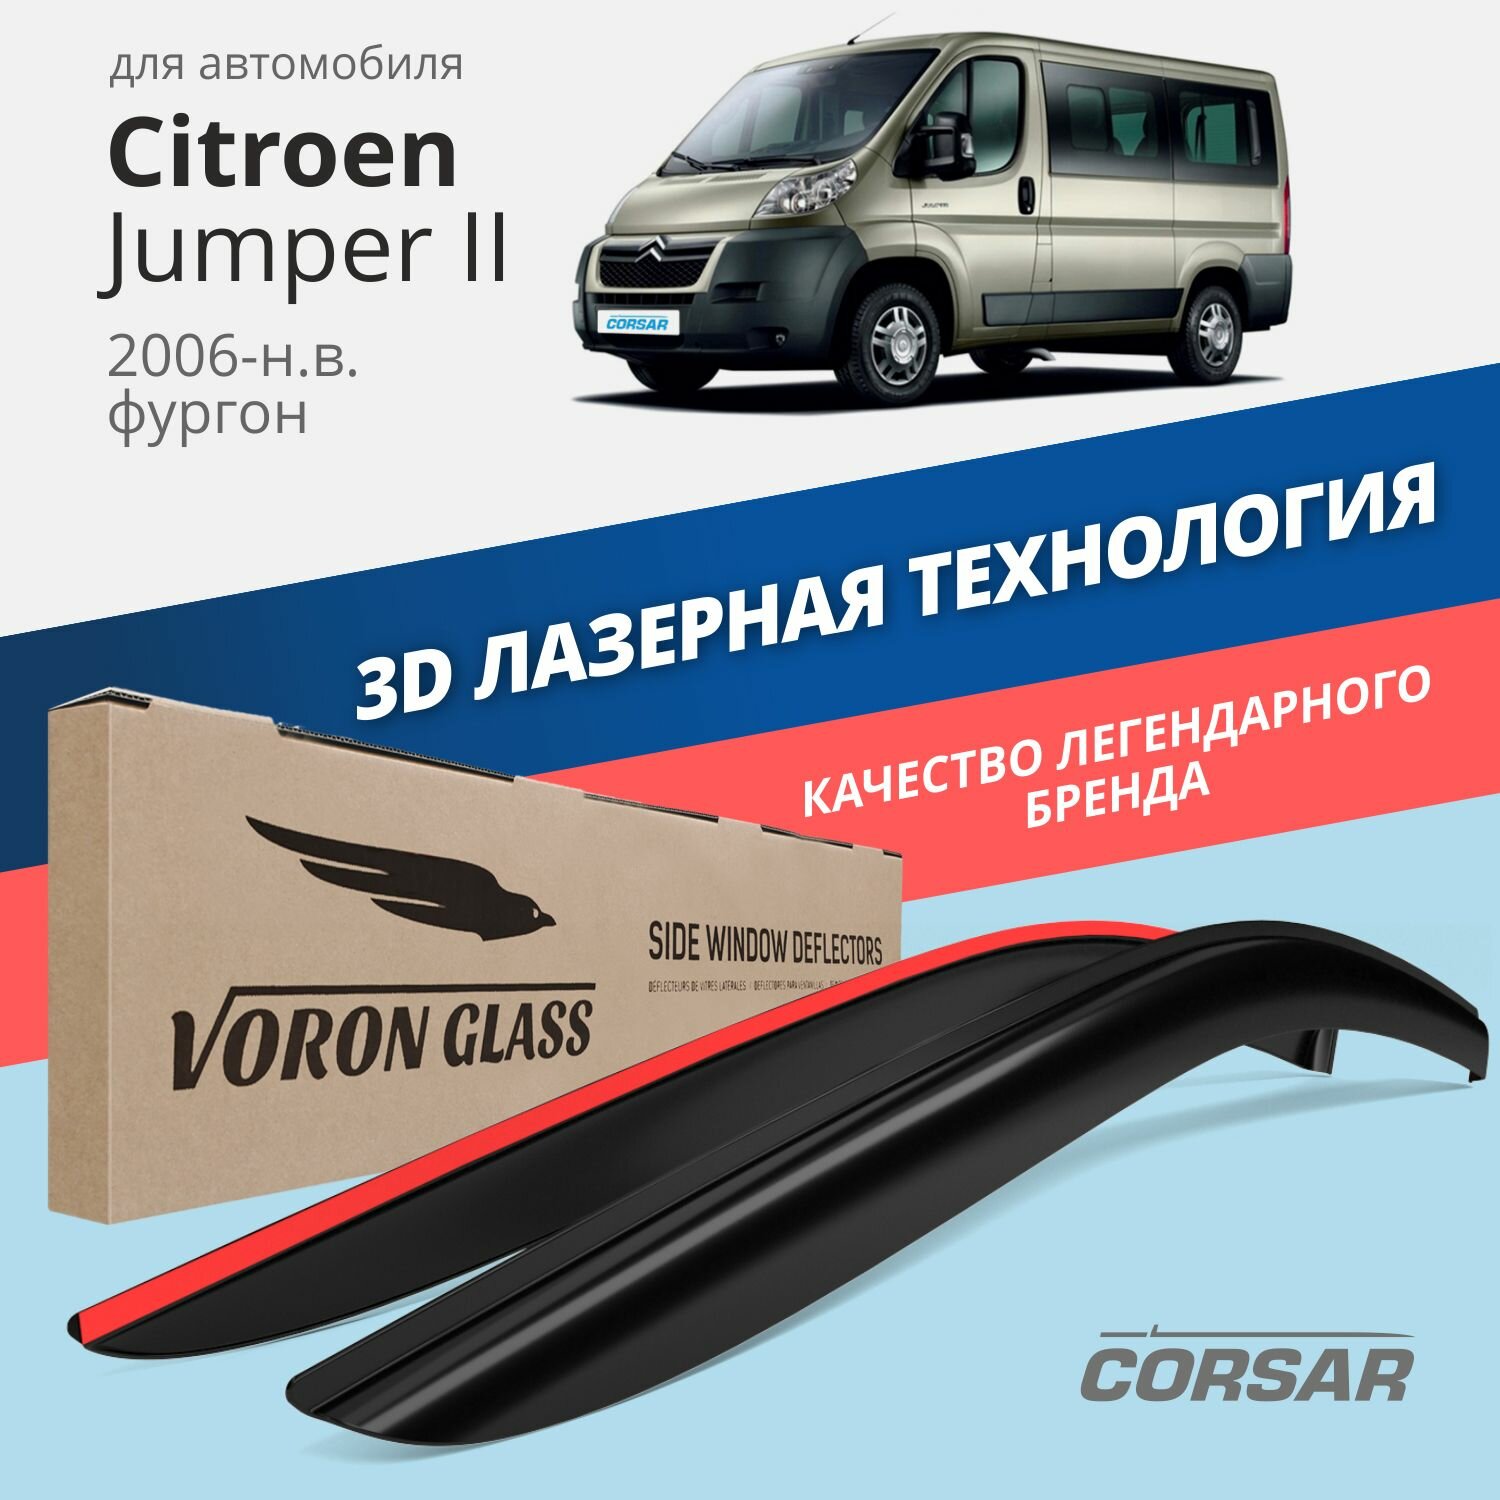 Дефлекторы окон Voron Glass серия Corsar для Citroen Jumper II 2006-н. в. накладные 2 шт.